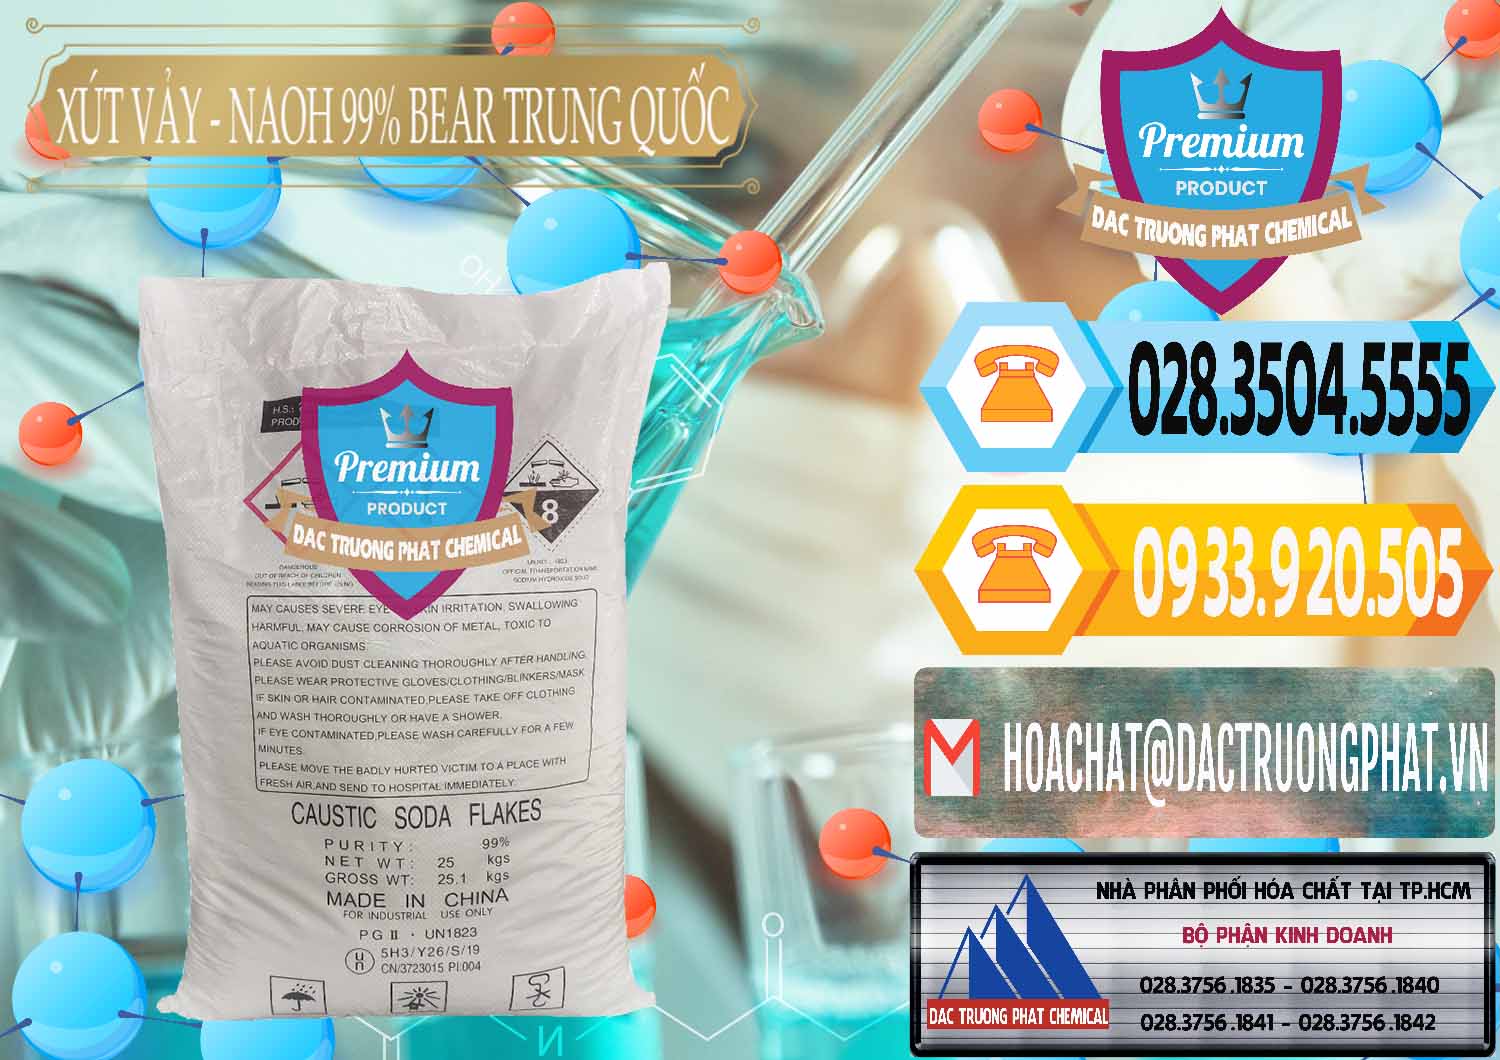 Cty chuyên cung cấp & bán Xút Vảy - NaOH Vảy 99% Bear Sơn Đông Trung Quốc China - 0175 - Công ty nhập khẩu và cung cấp hóa chất tại TP.HCM - hoachattayrua.net